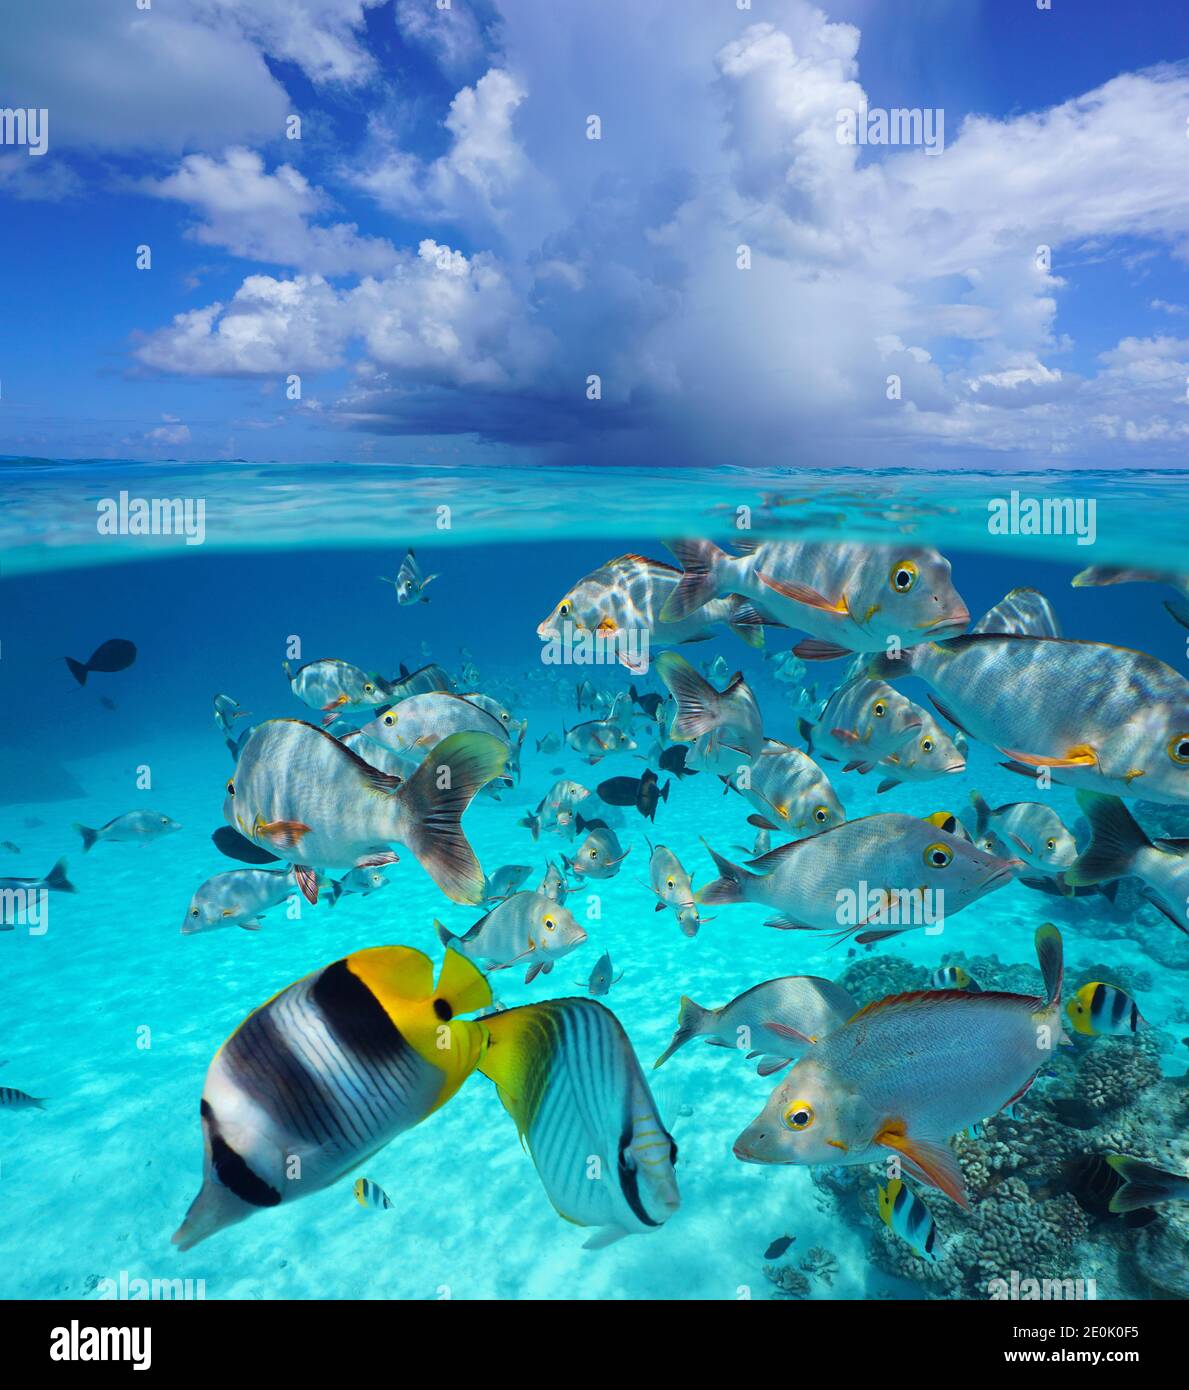 Nuvola sopra la superficie del mare con pesci tropicali sott'acqua, mare sopra e sotto l'acqua, oceano Pacifico, Polinesia francese, Oceania Foto Stock